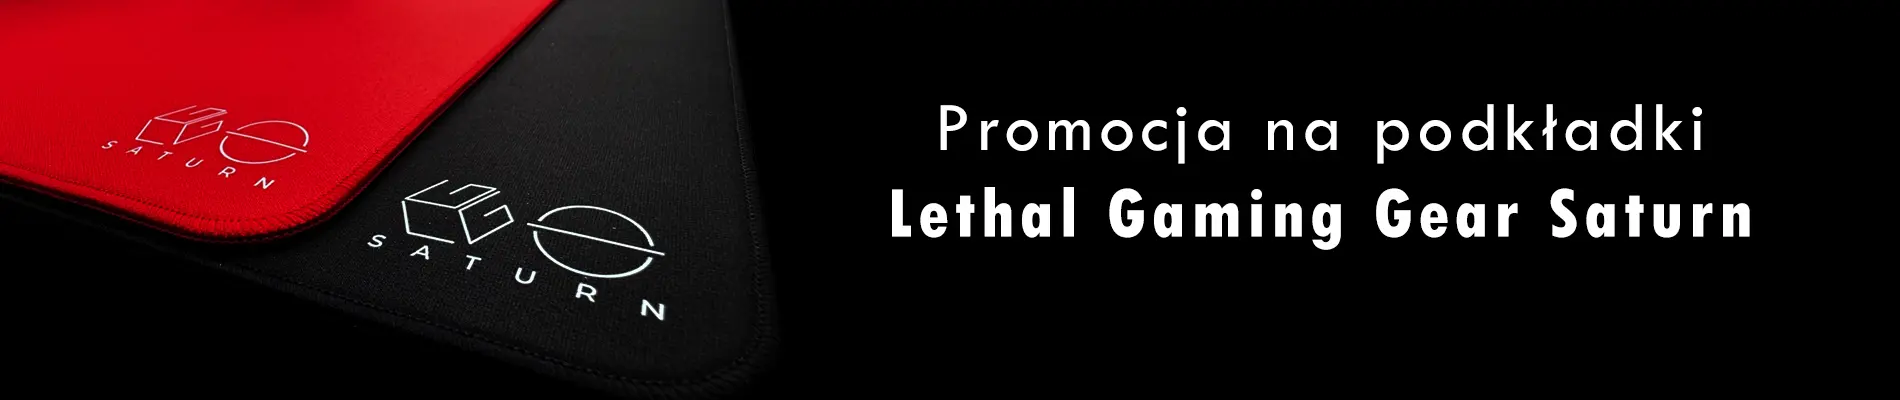 Promocja na podkładki Lethal Gaming Gear Saturn